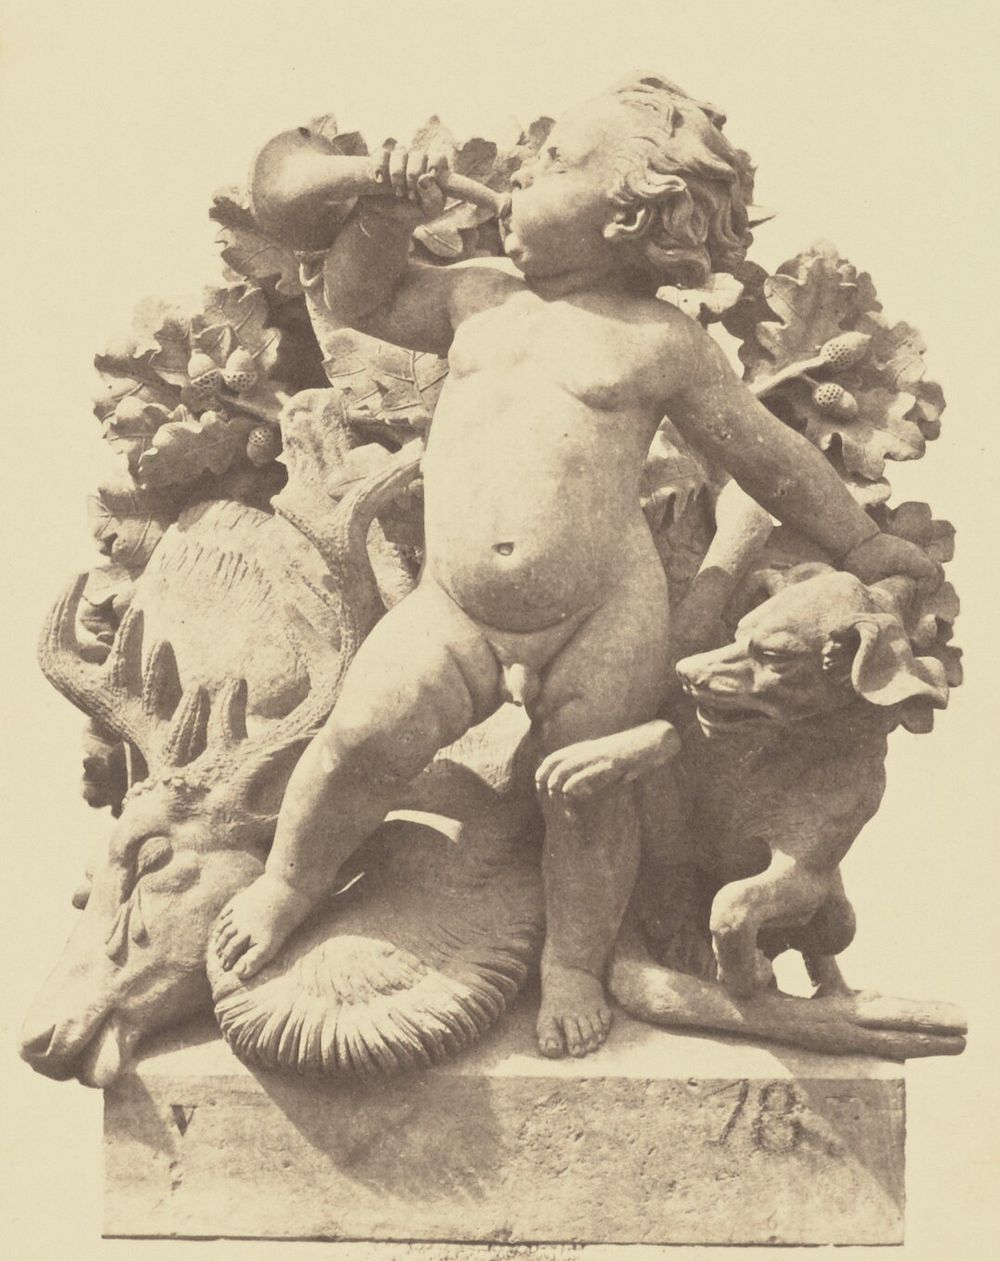 "La Chasse", Sculpture by Auguste Jean Baptiste Lechesne, Decoration of the Louvre, Paris by Édouard Baldus